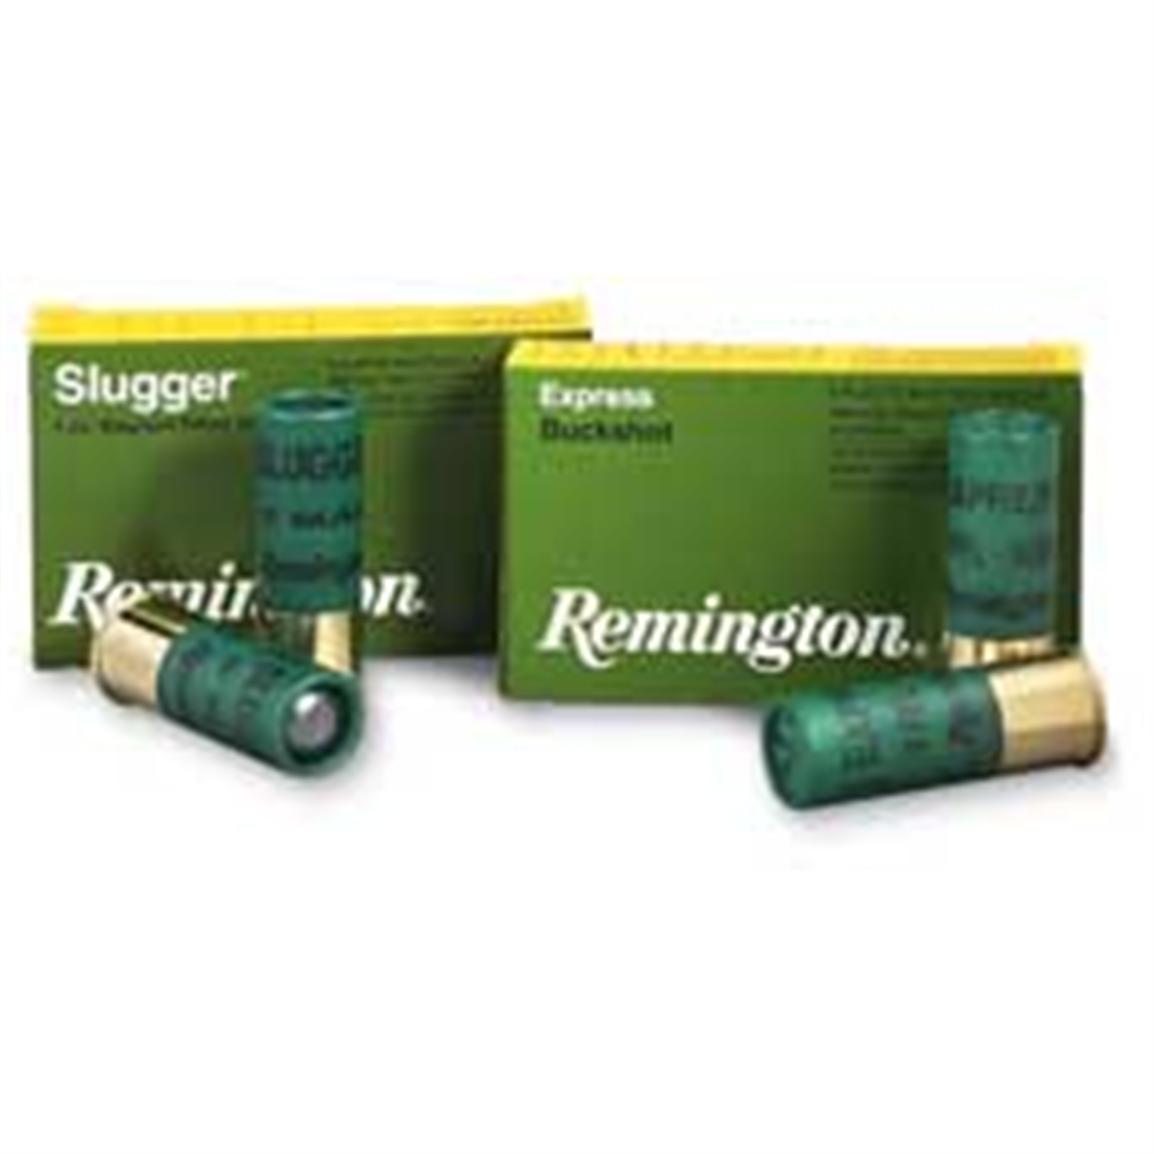 Remington Slugs, 2 3/4" 12 Gauge, 1 oz. Slug, 250 Rounds